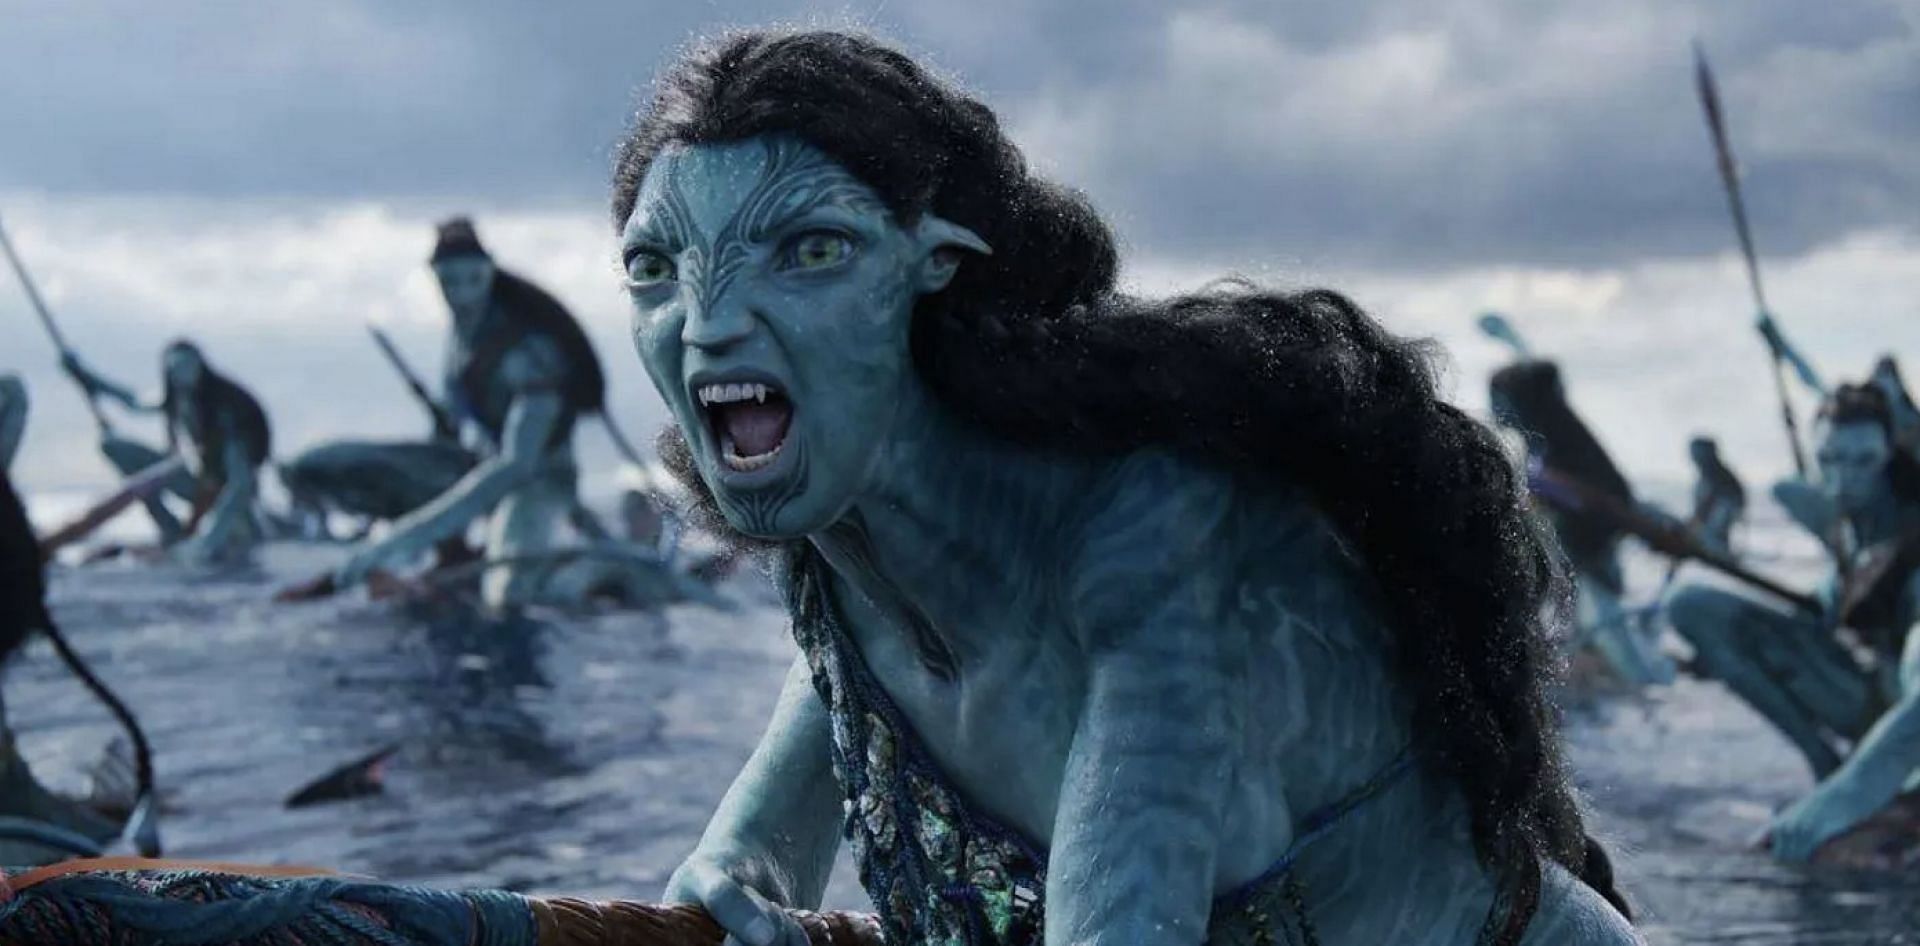 Mỹ nhân đẹp nhất phim Avatar 2 từng đau khổ vì bị bodyshaming